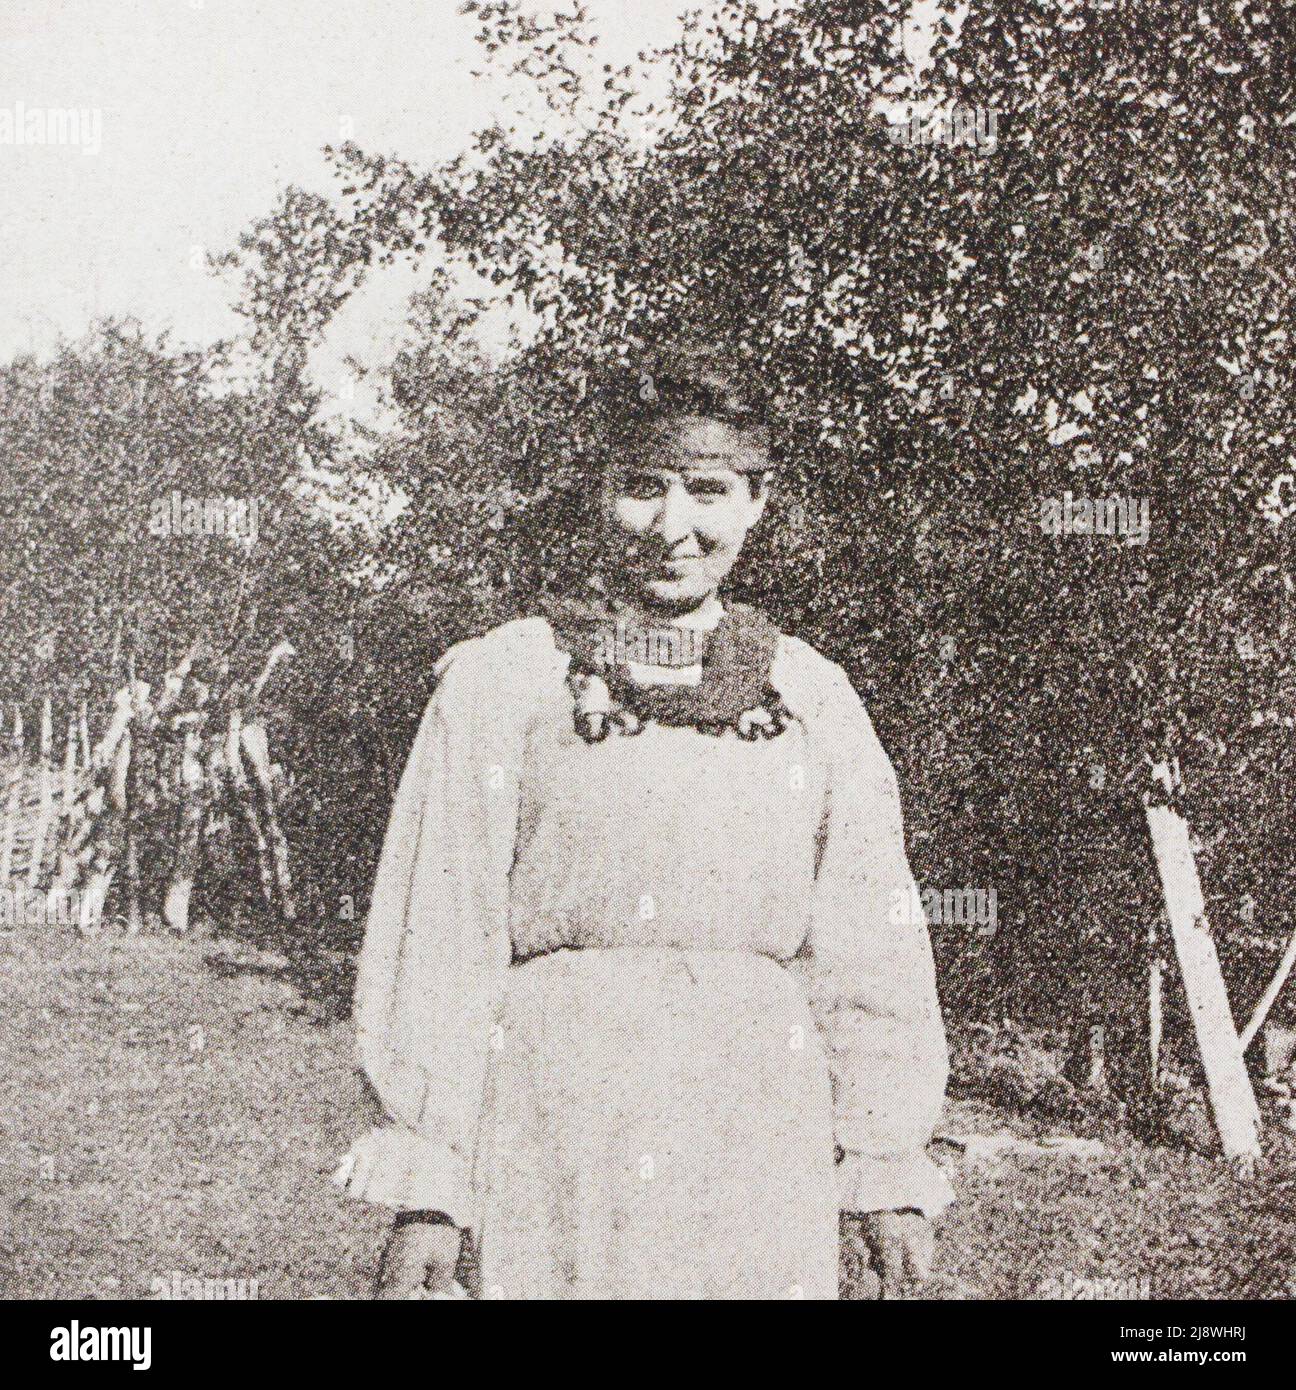 Paysanne abkhaze du village de Barmysh dans le Transcaucasus. Photo du début du 20th siècle. Banque D'Images